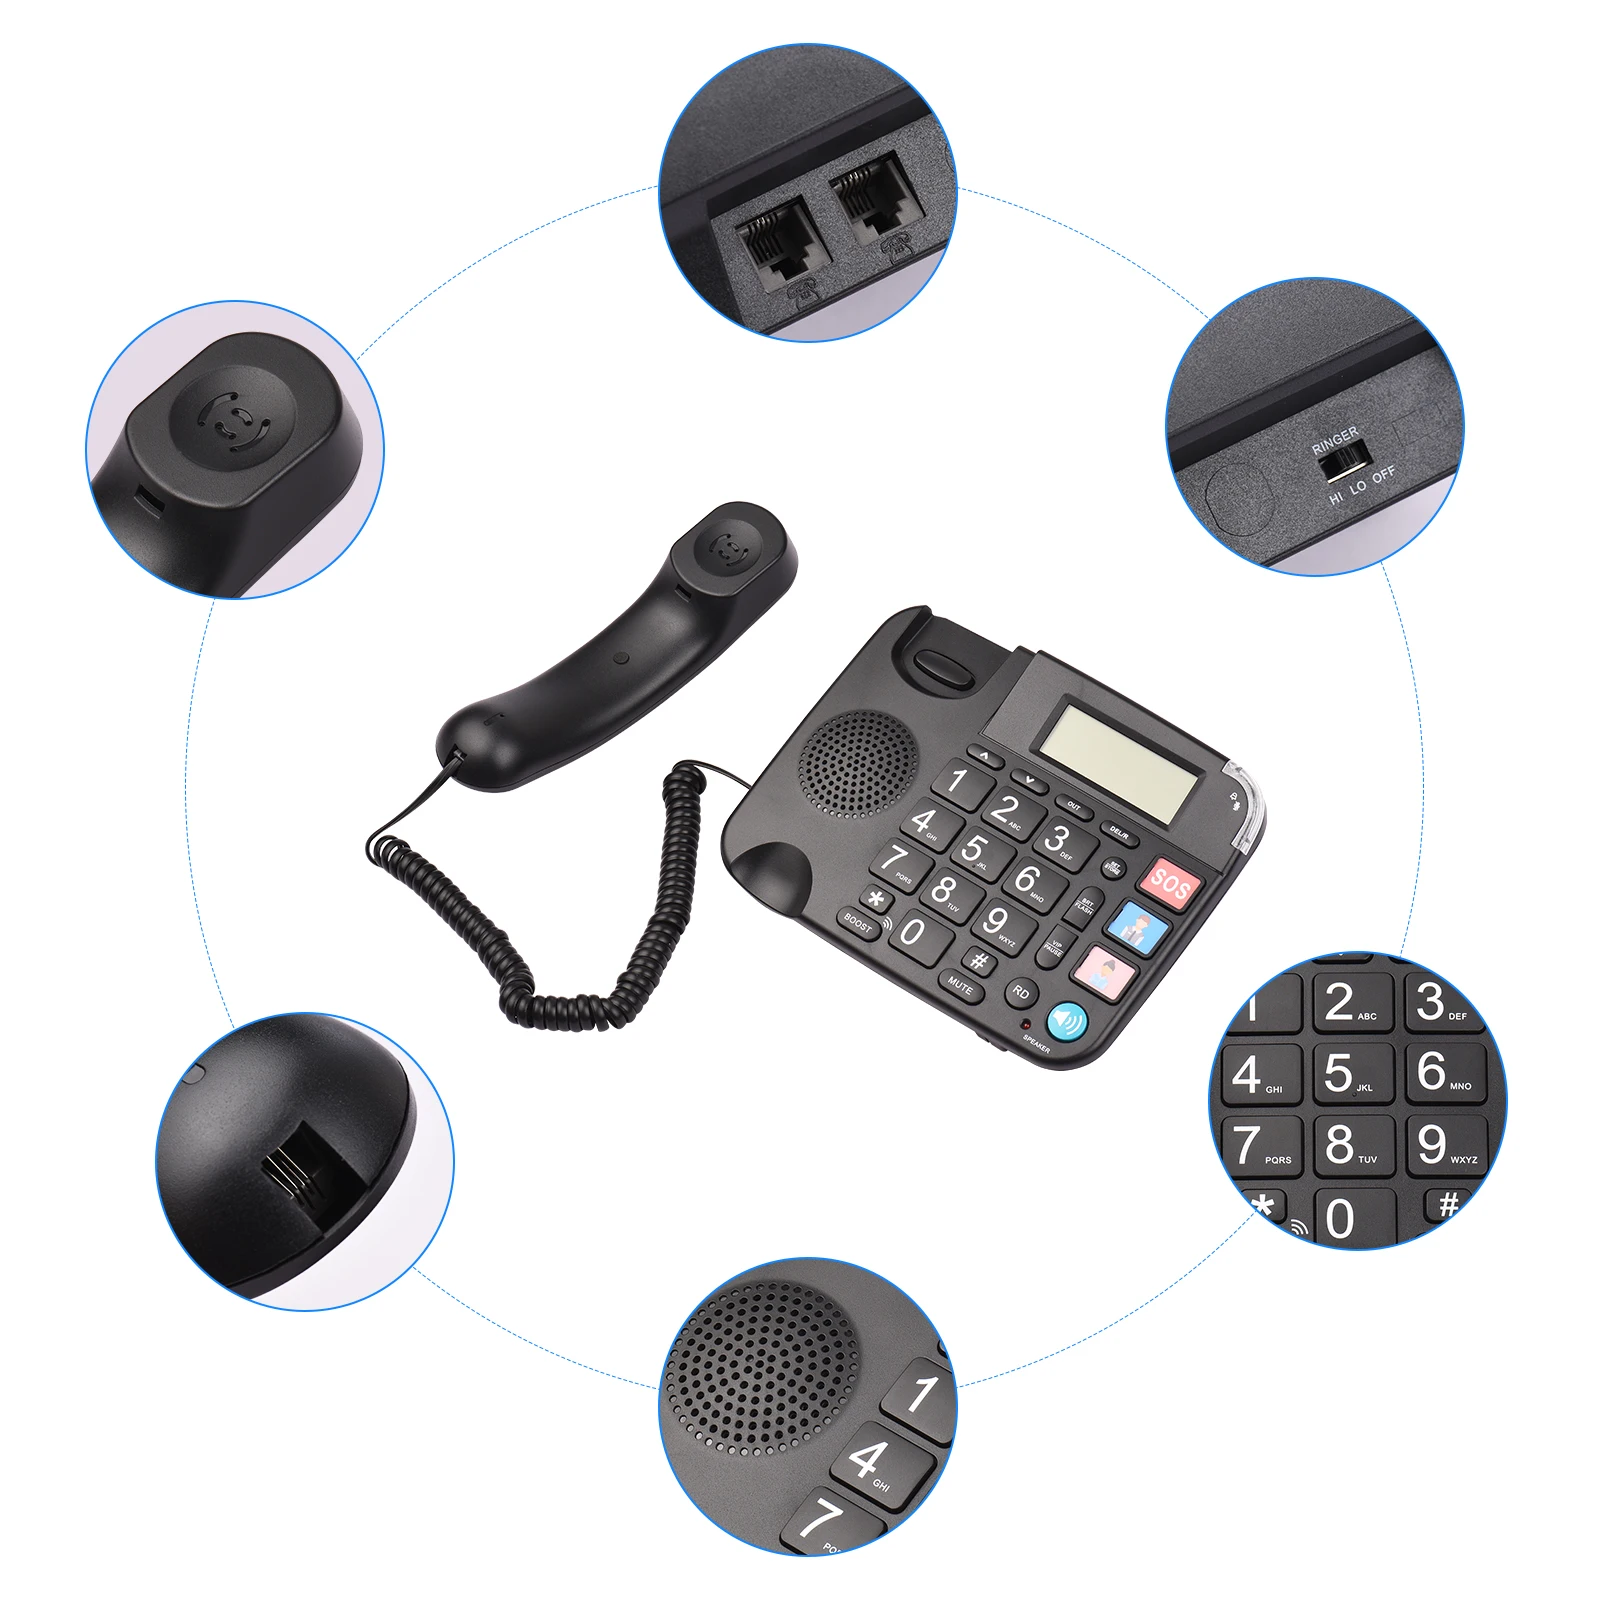 Accessoires Téléphone bordé noir avec gros bouton Desk Landline Téléphone Téléphone Prise en charge des mains et Redial / Flash / Speed Dial / Ring Volume Control